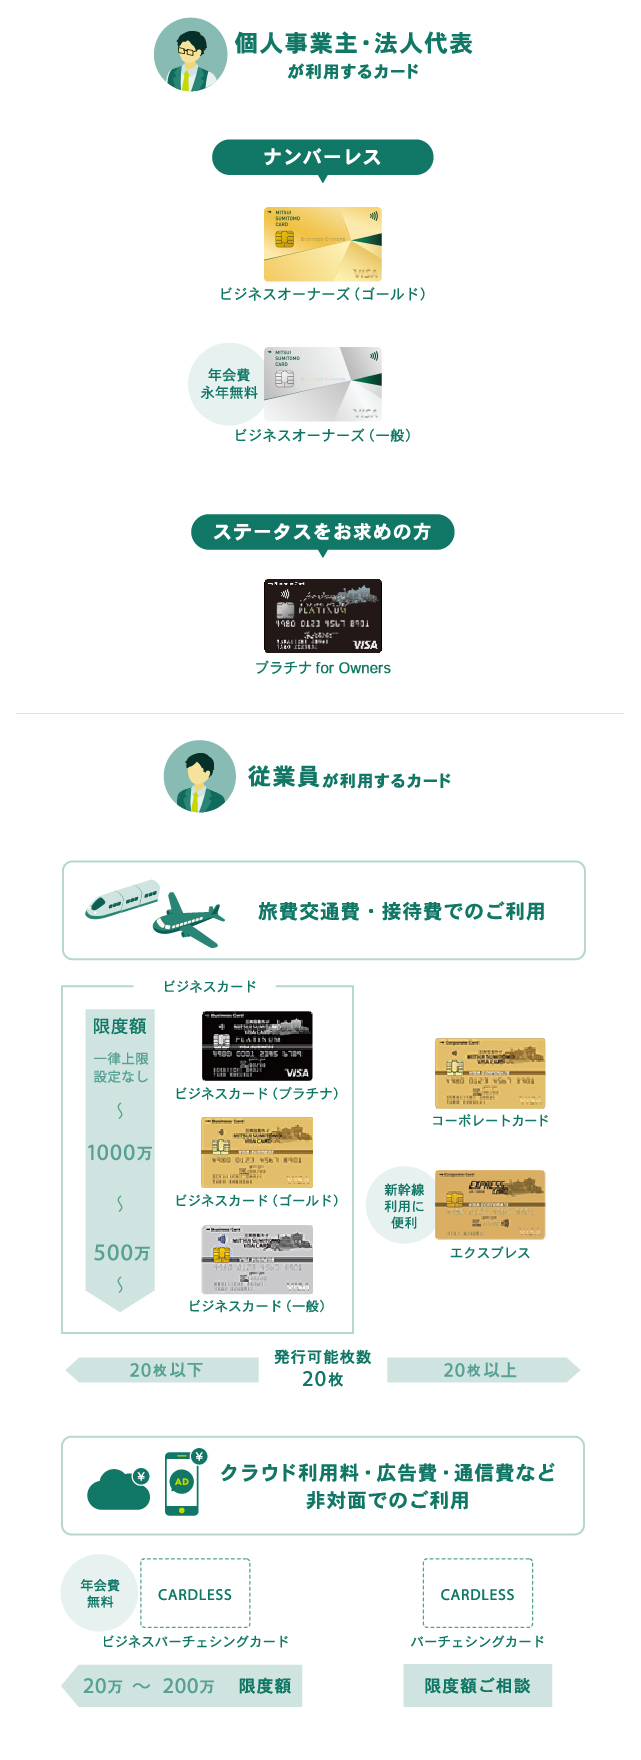 三井住友カードの法人カードラインナップ